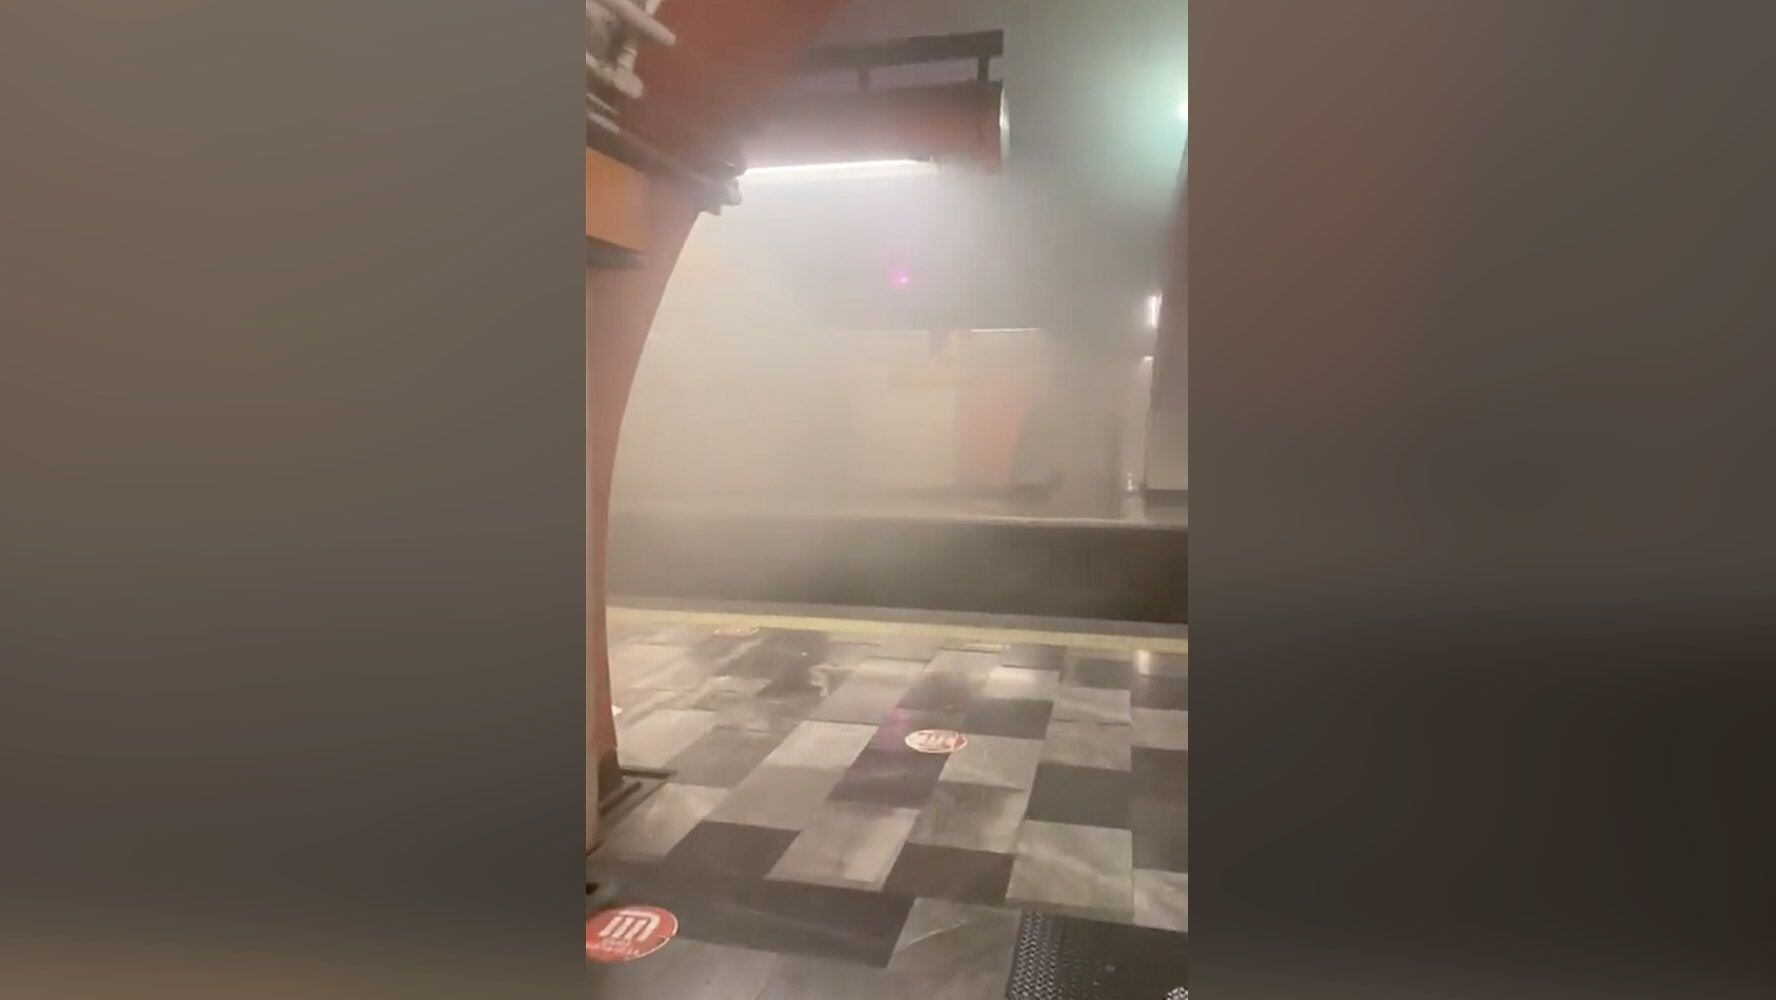 Corto circuito en Línea 7 del Metro: Desalojan a usuarios en Barranca del Muerto; hay 20 intoxicados